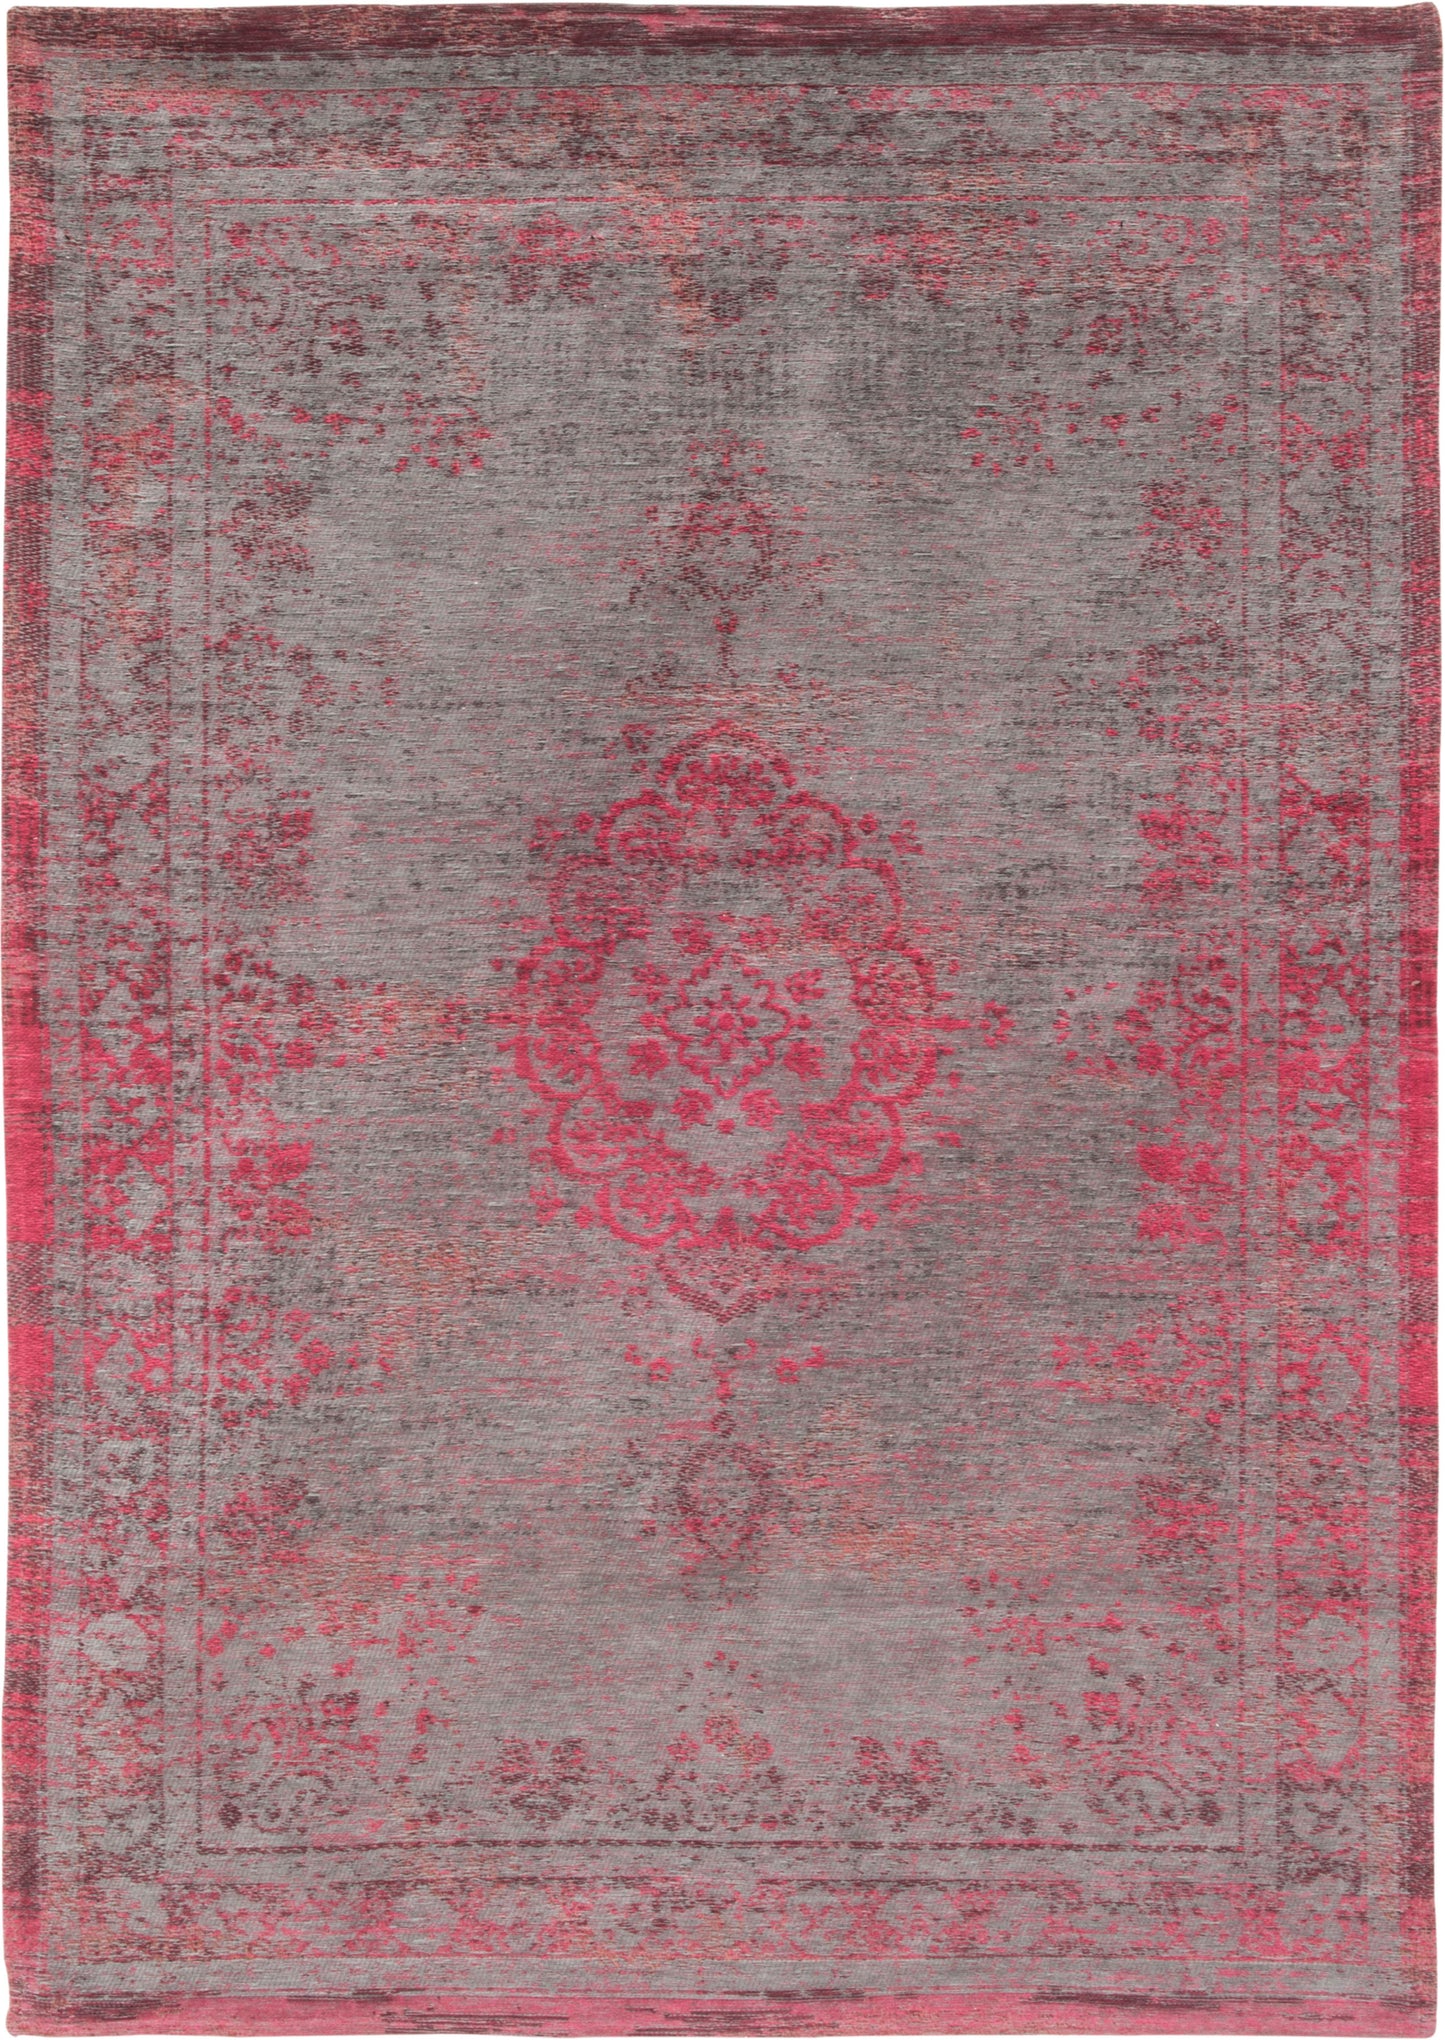 ME-801: Jacquard carpet